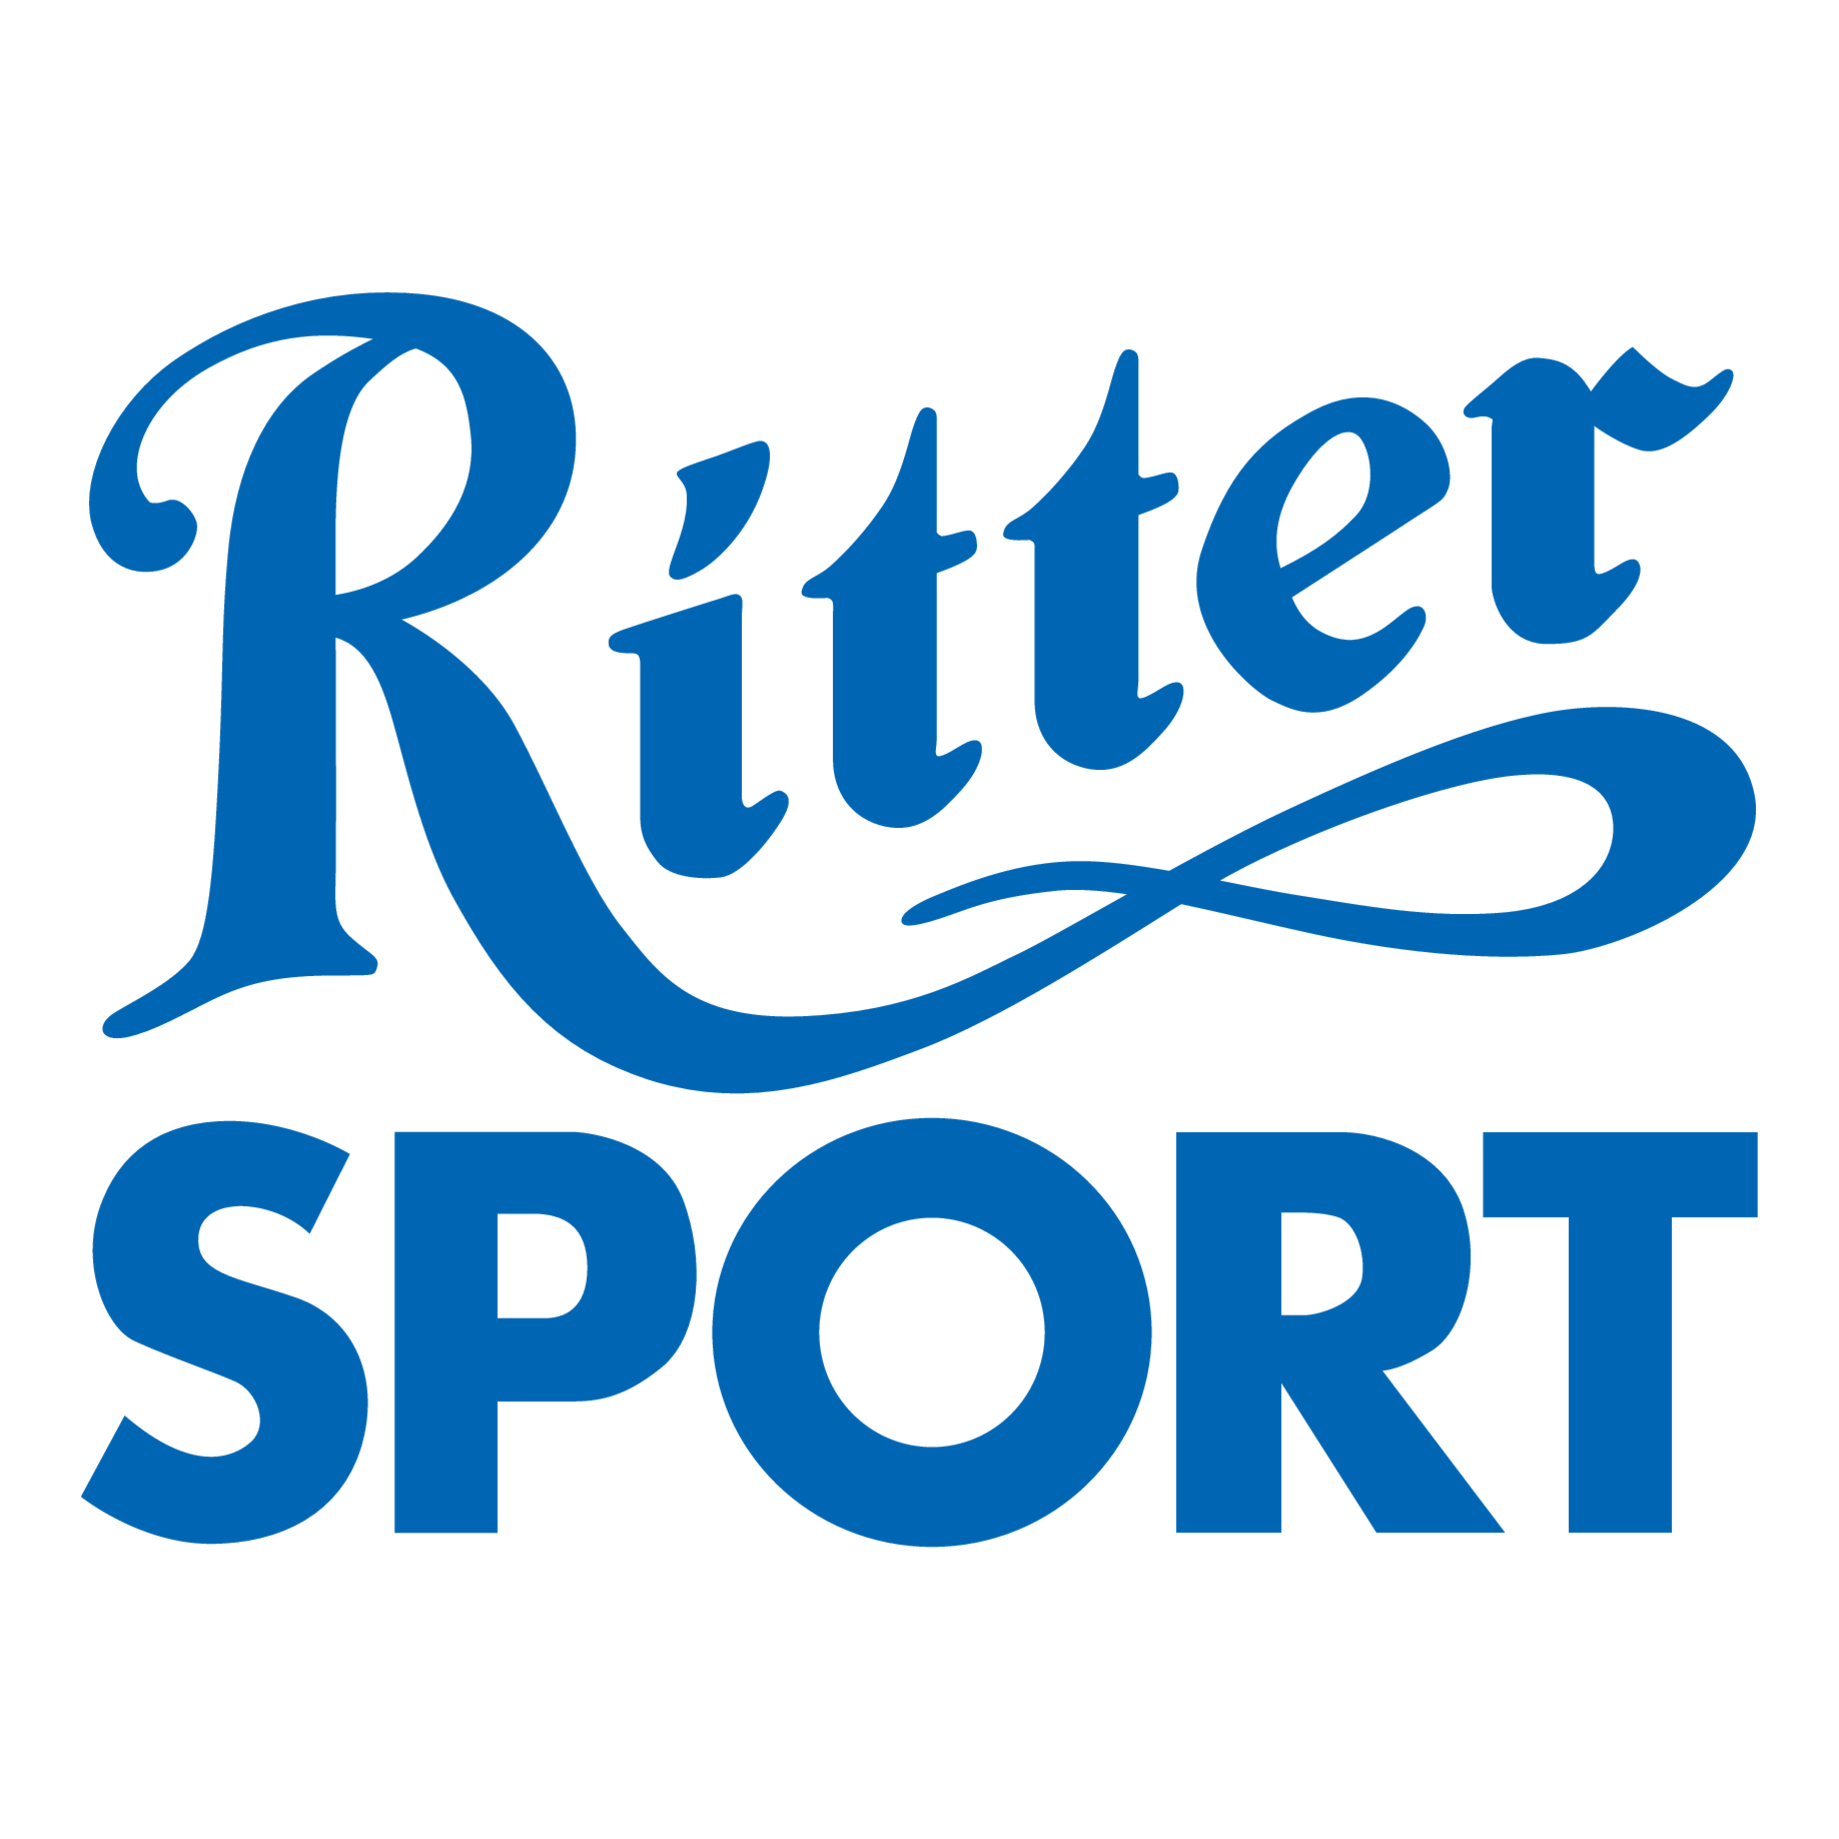 Ritter SPORT